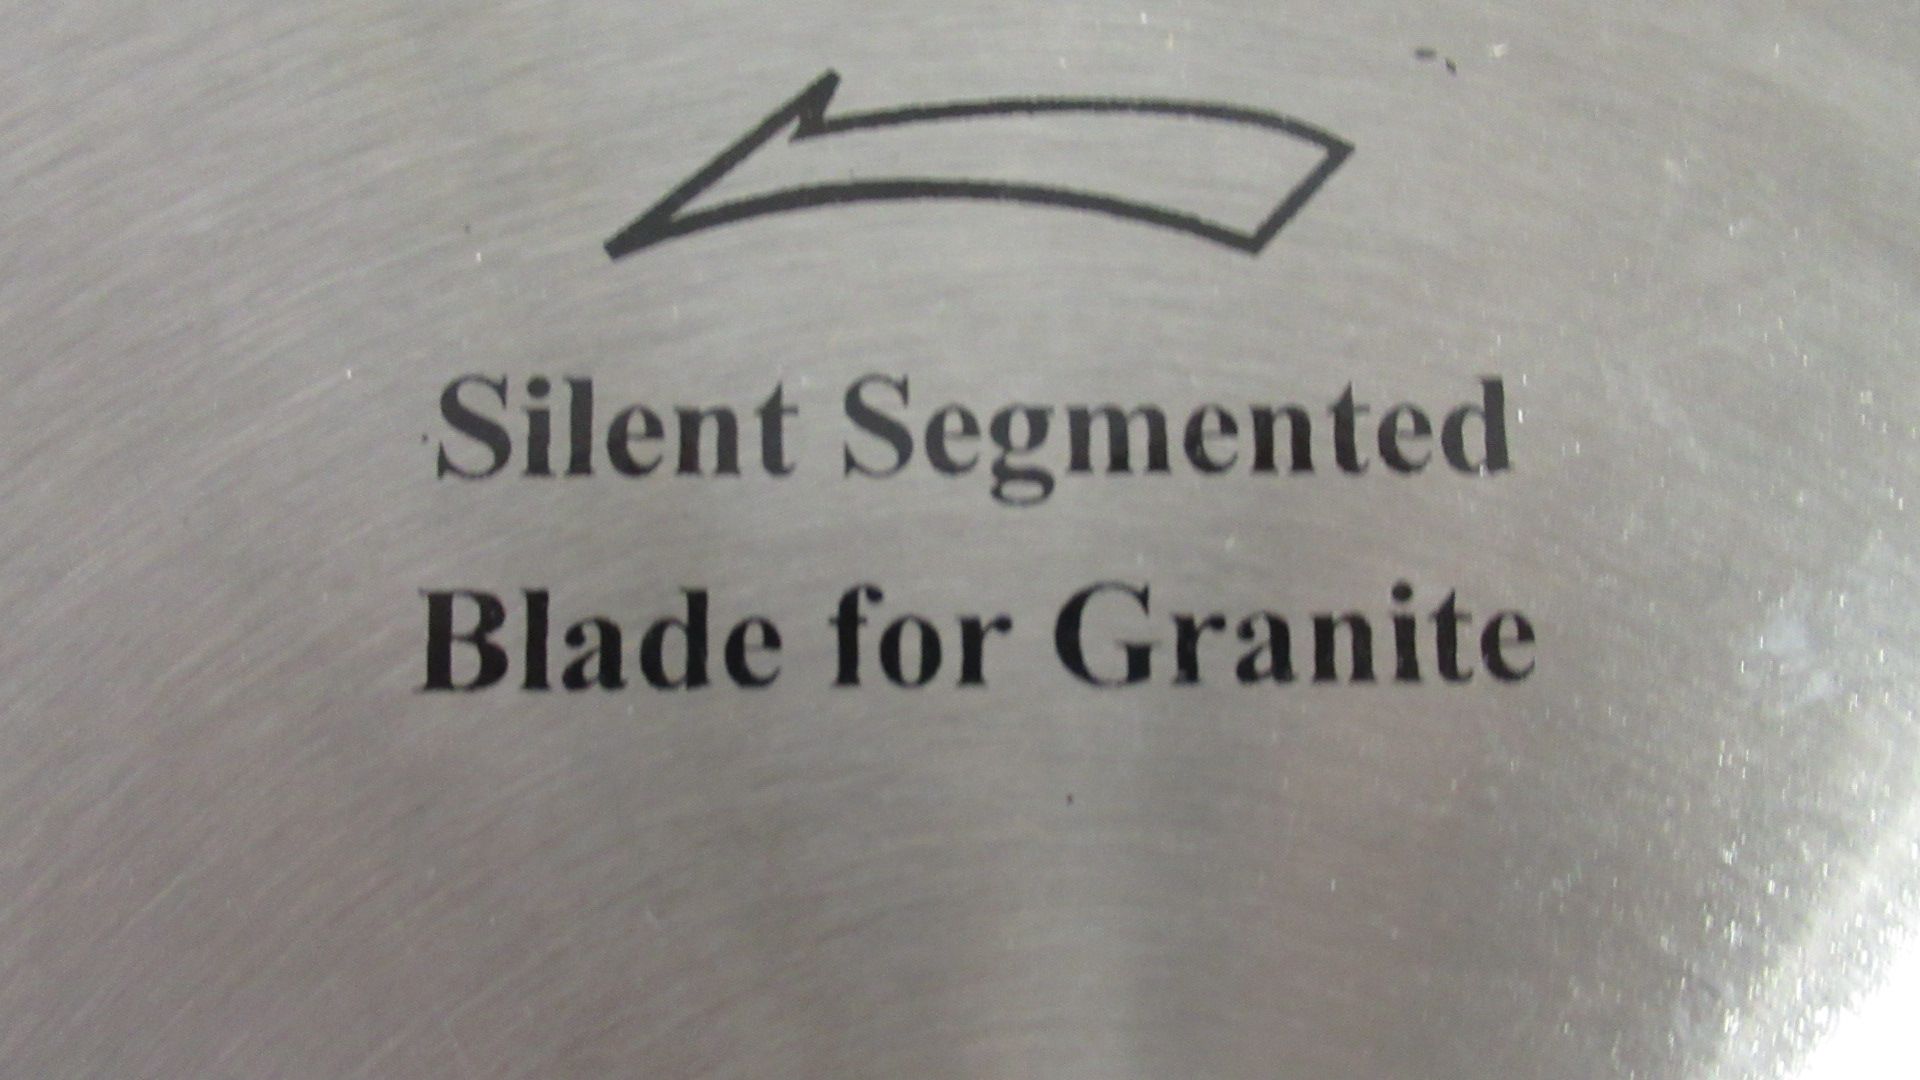 16" DIAMOND BLADE FOR GRANITE, SILENT SEGMENT,2-1/4" DIA. BORE - Image 2 of 2